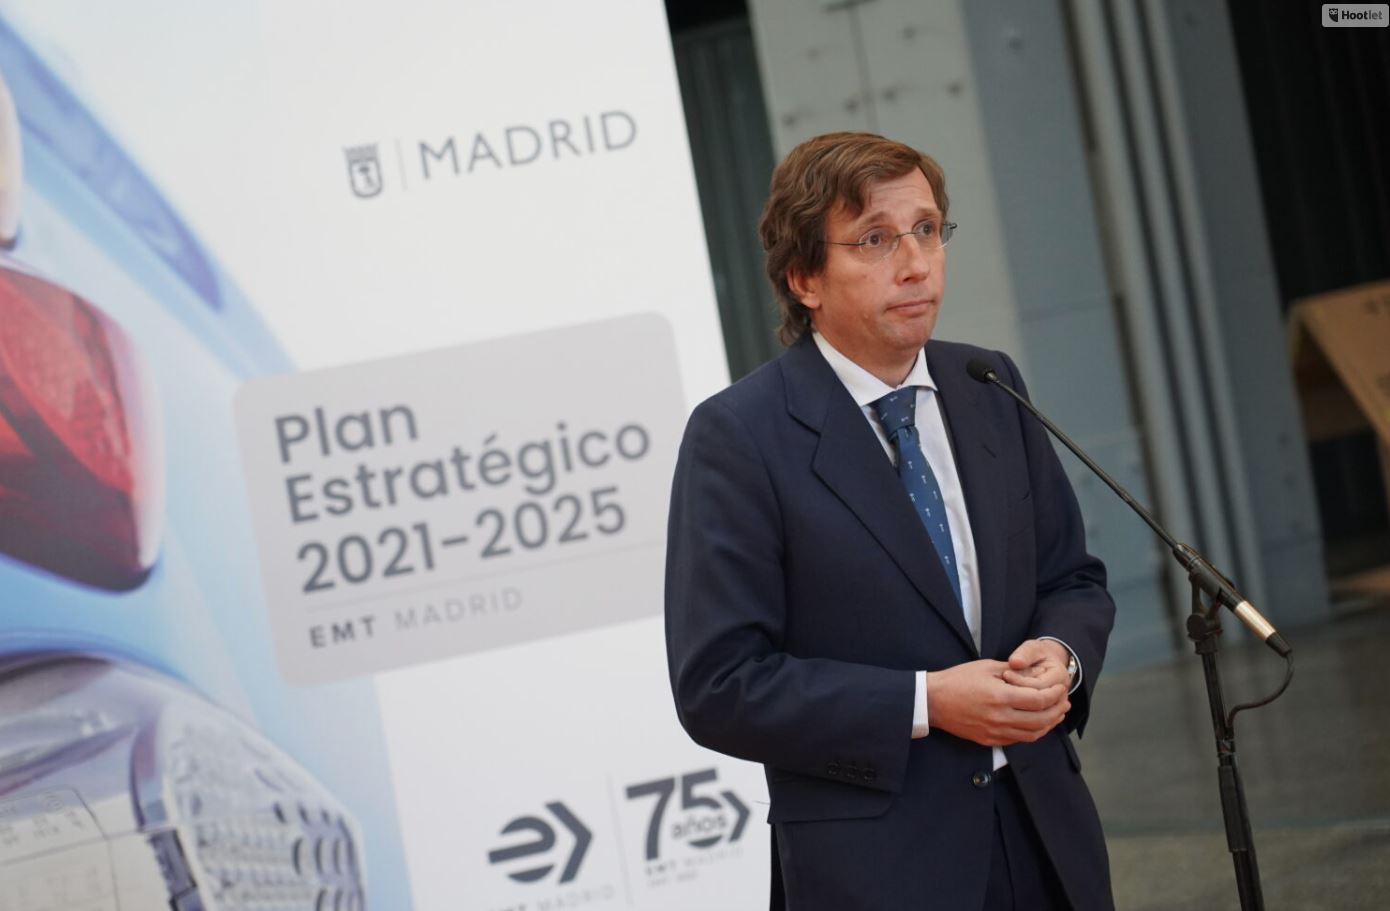 El Ayuntamiento destinará una inversión histórica para la revolución tecnológica de la EMT: 1.000 millones de euros hasta 2025